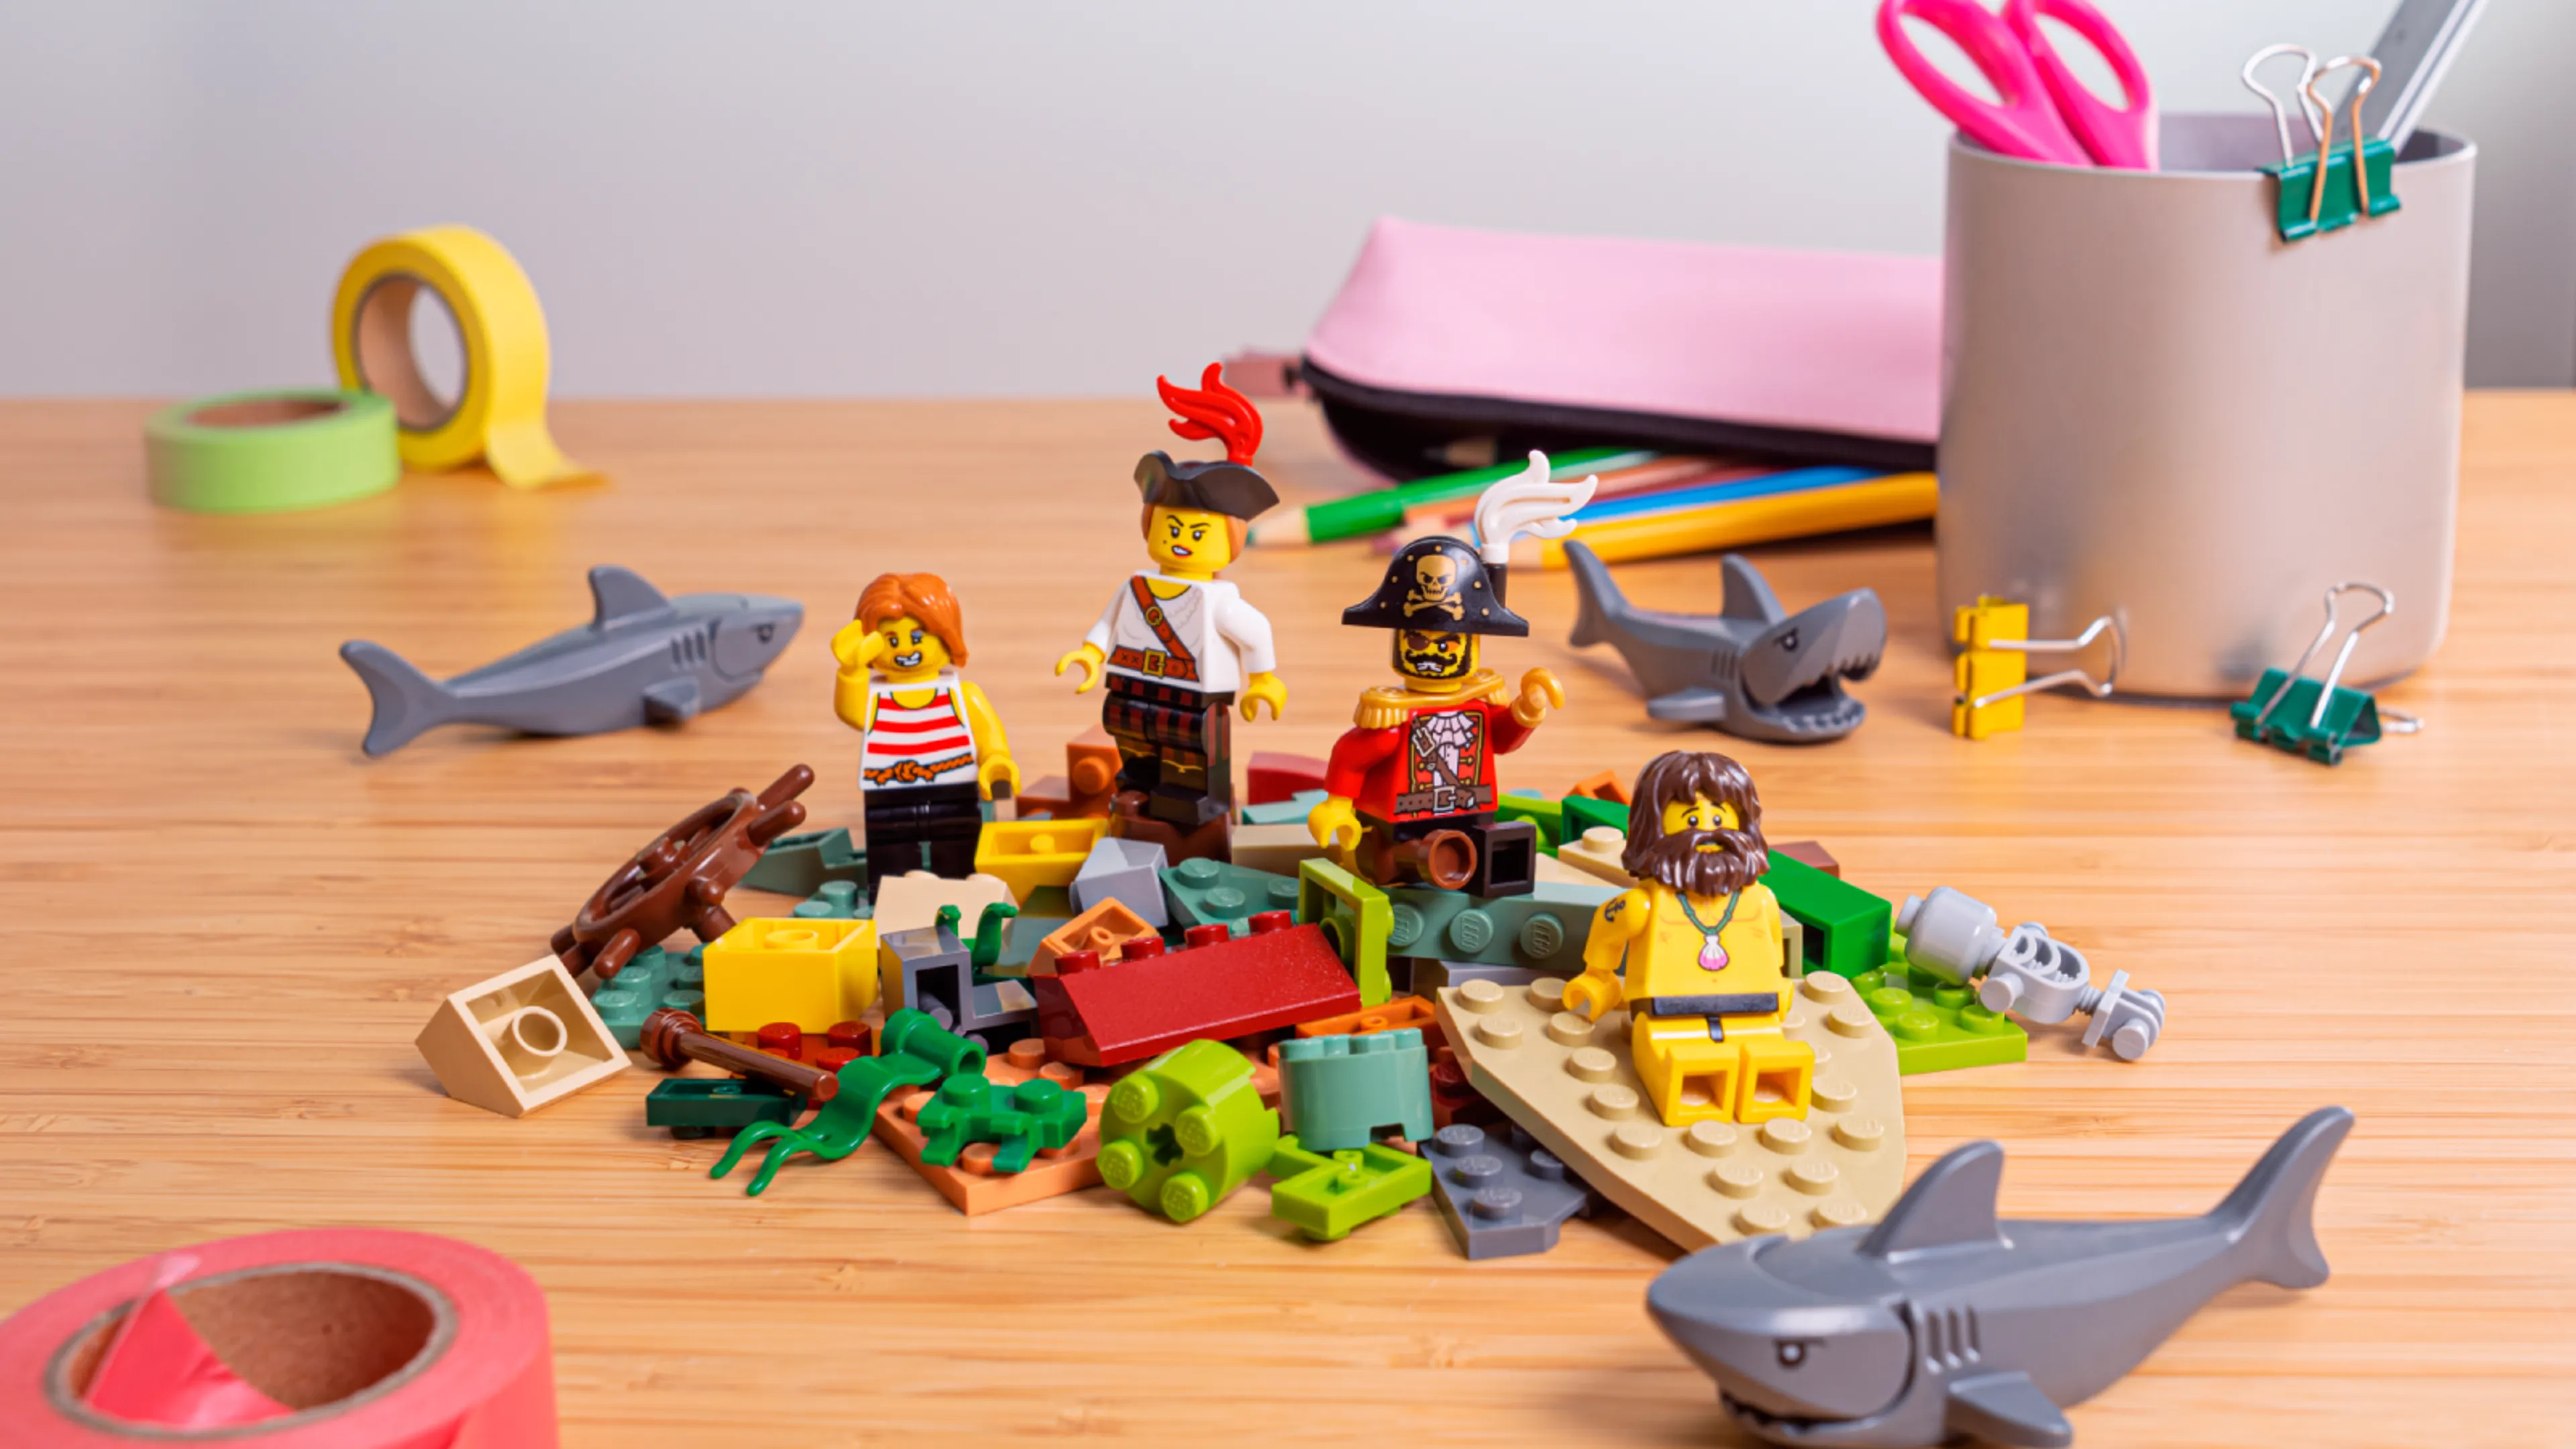 Minifiguras sentadas sobre un montón de bricks LEGO